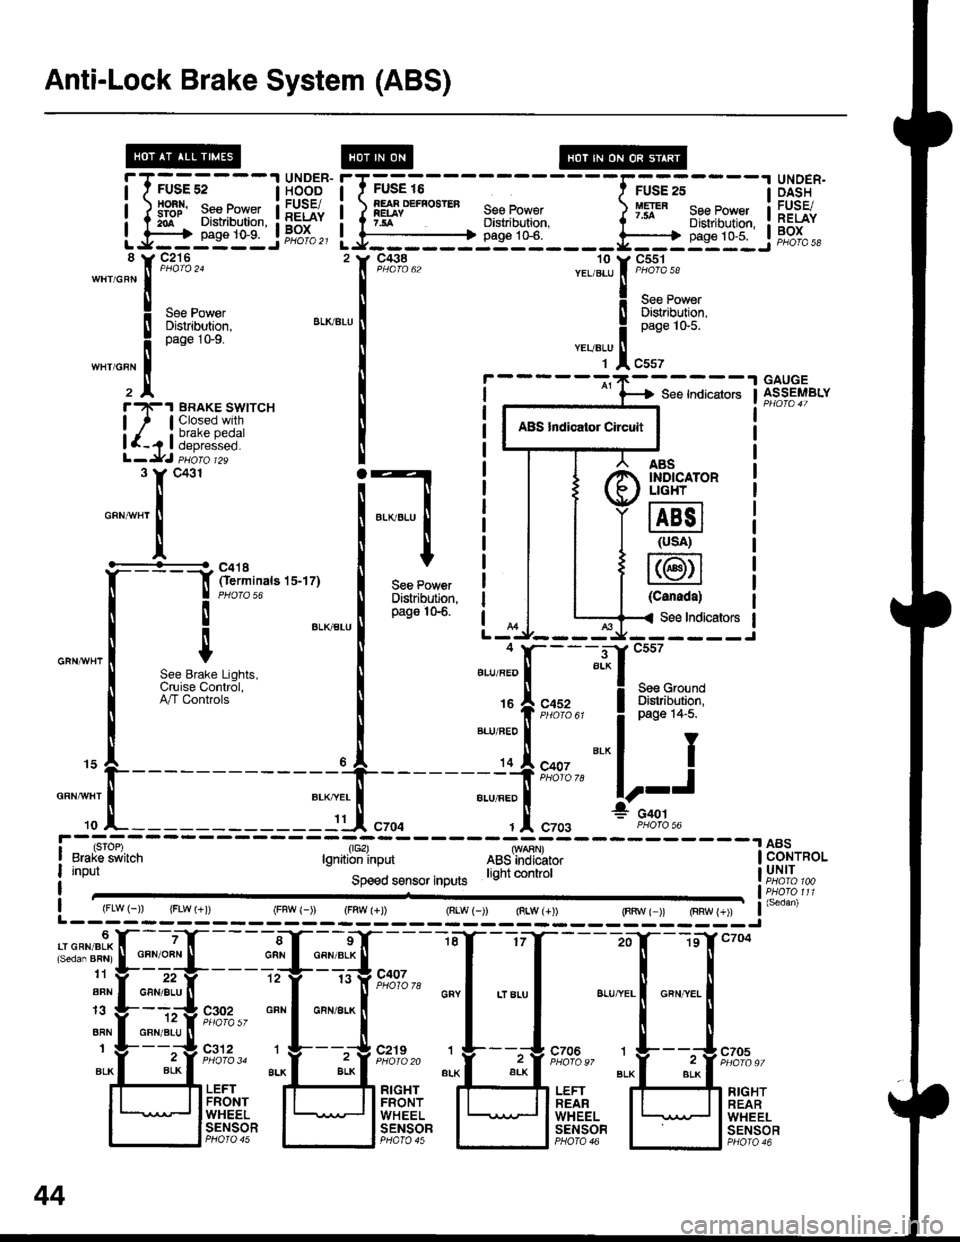 HONDA INTEGRA 1998 4.G Owners Manual Anti-Lock Brake System (ABS)
iTffi;---IH5BE"
tlSrqr$llilHh1,
UNOER.DASHFUSE/RELAYBOX
FUSE 16
EEiFf a ) IESYD€F...EB 1."-9 ii1gl7sA Distribution,
Lf:je:l- JPPJ",,---------+ pags 1G6.
__li;;, 
"-",[